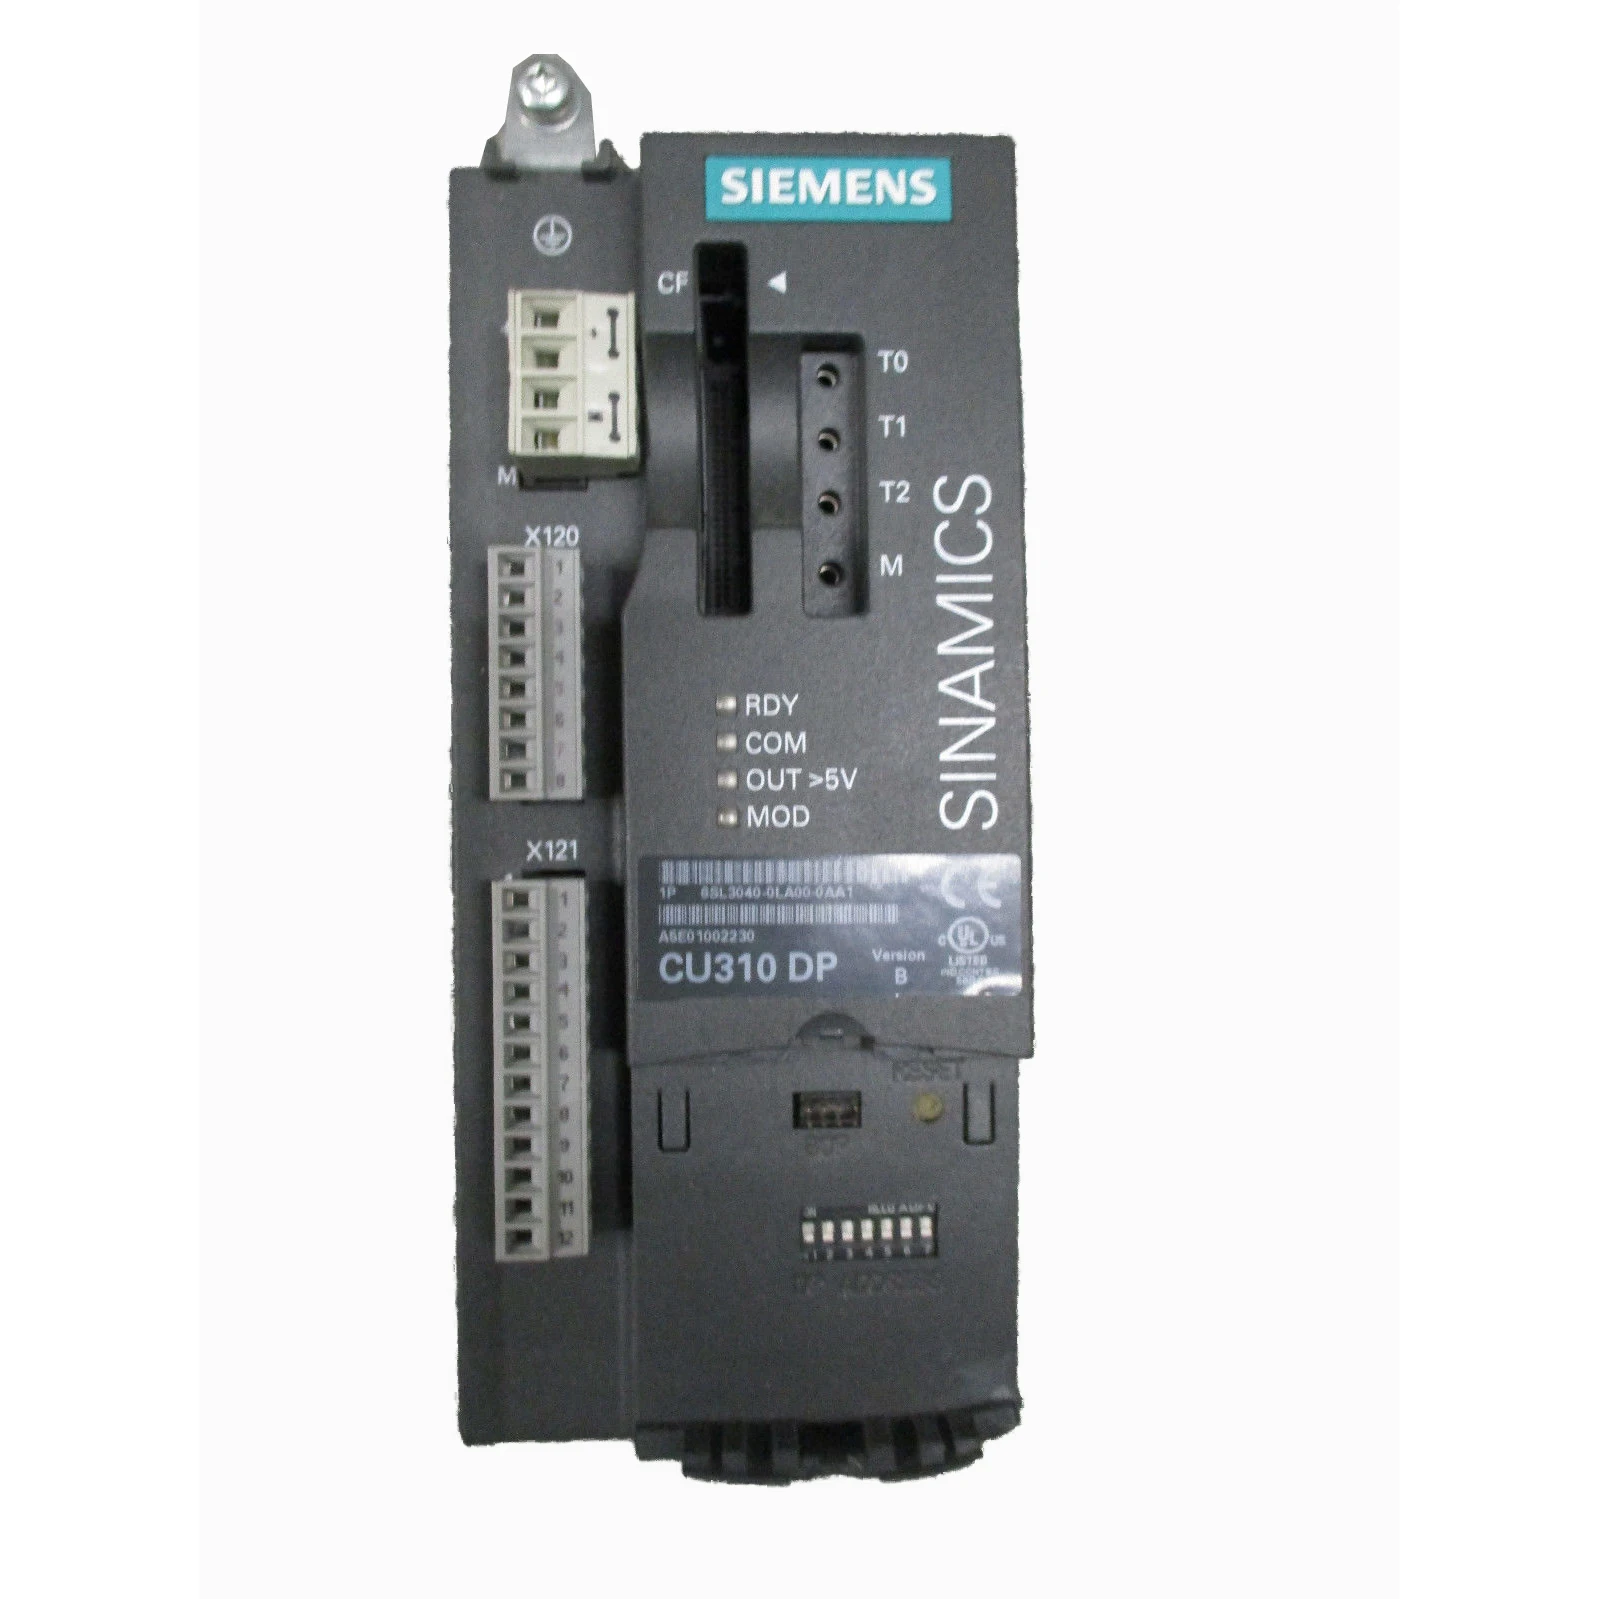 

Блок управления Siemens Sinamics 6SL3040-0LA00-0AA1, CU310 DP, используется в хорошем состоянии